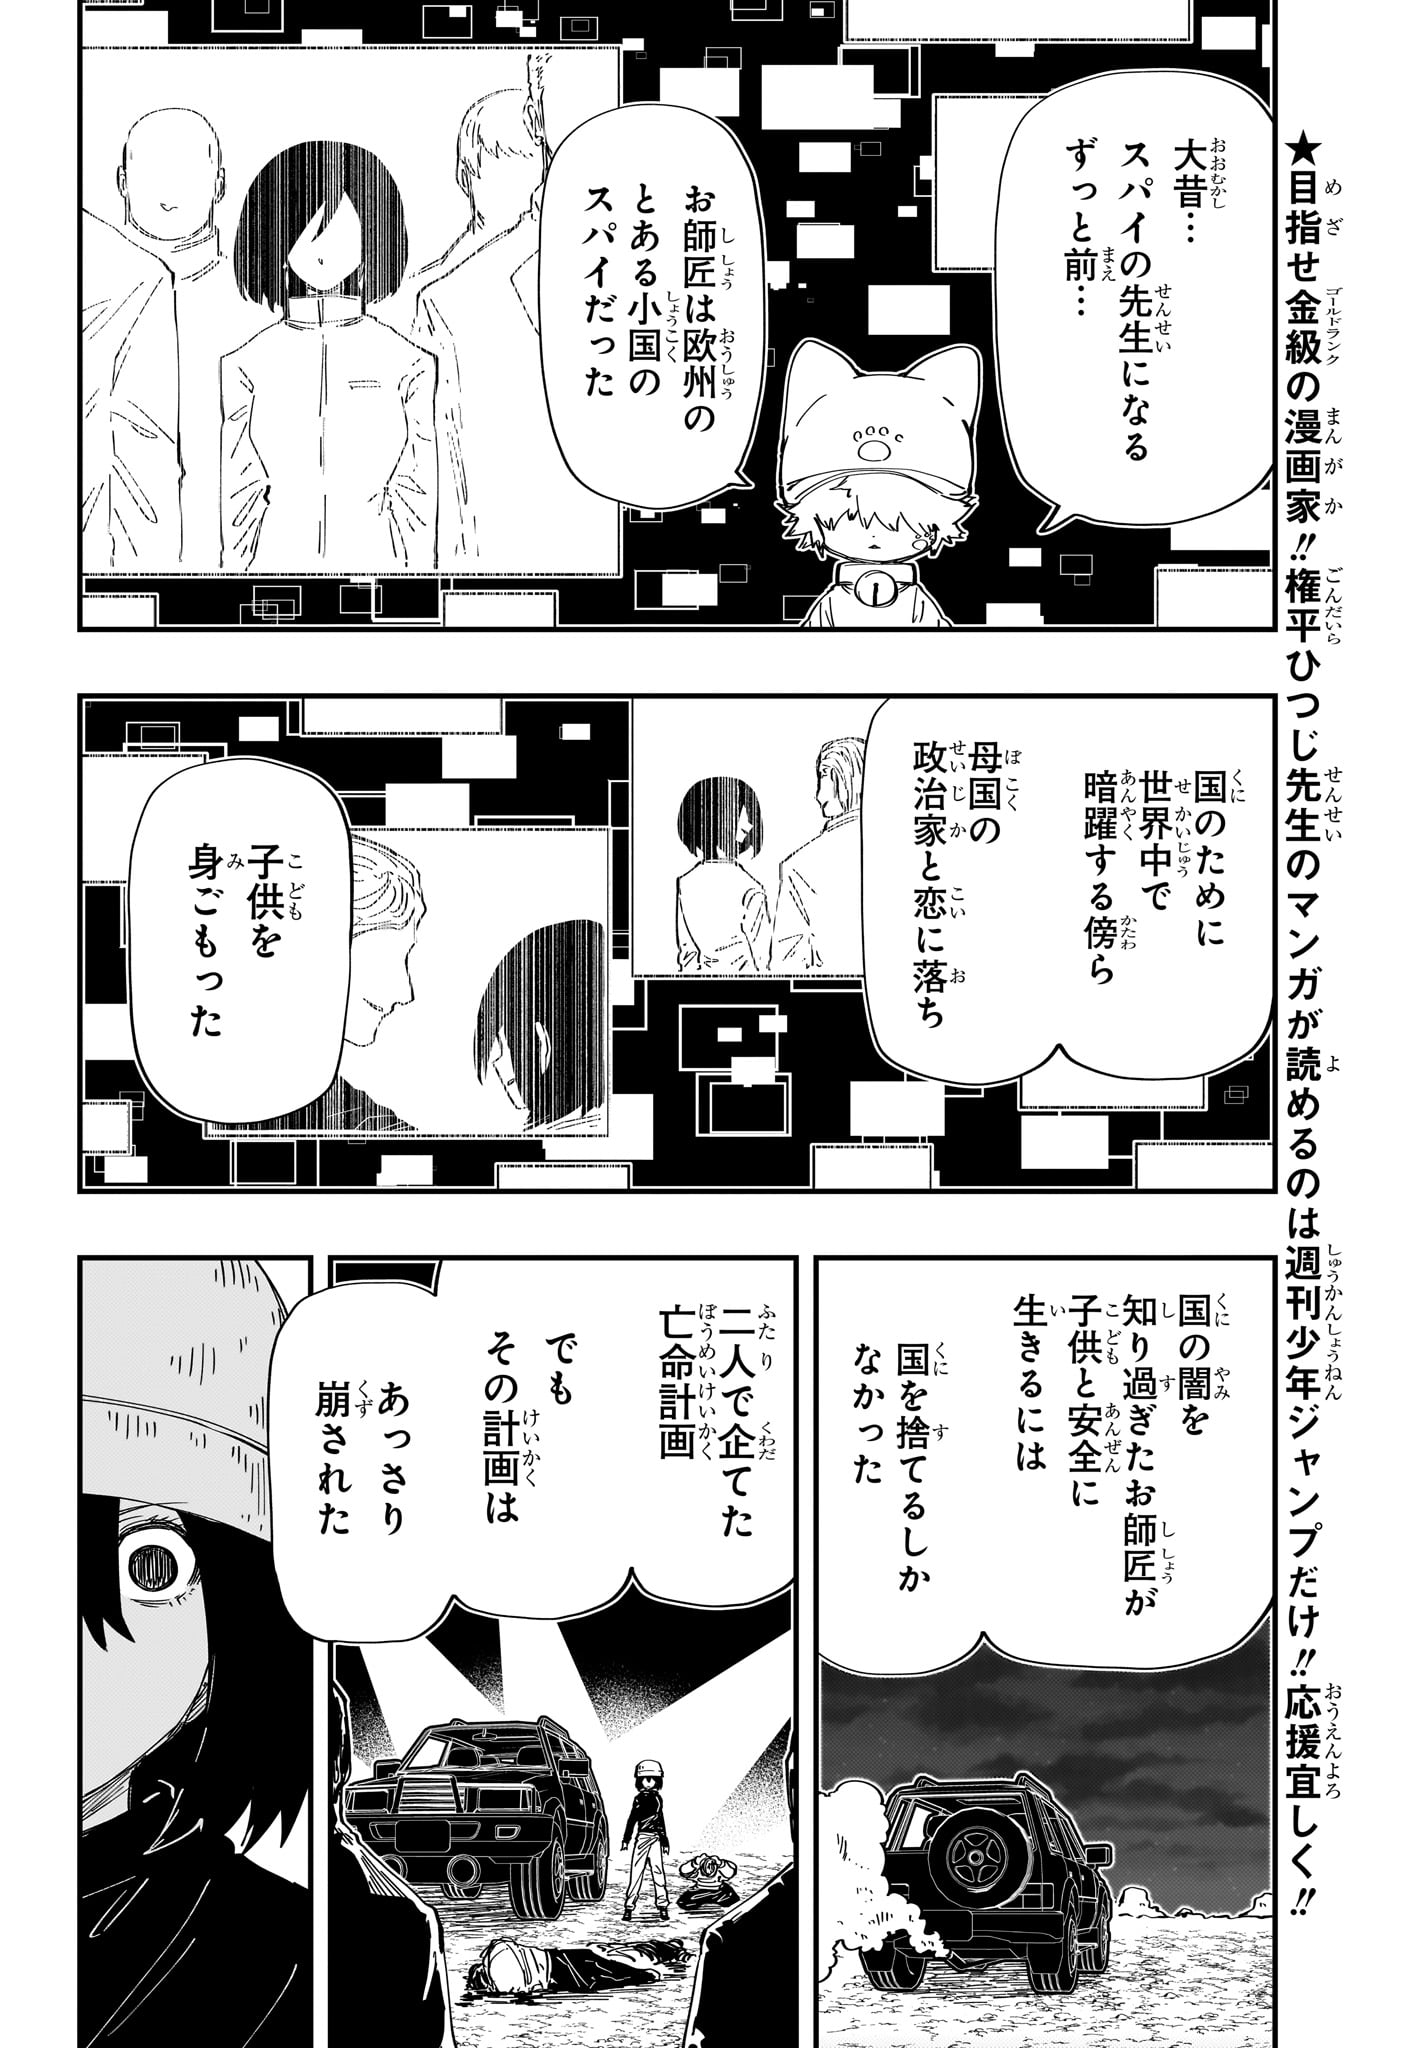 Yozakura-san Chi no Daisakusen - Chapter 232 - Page 4